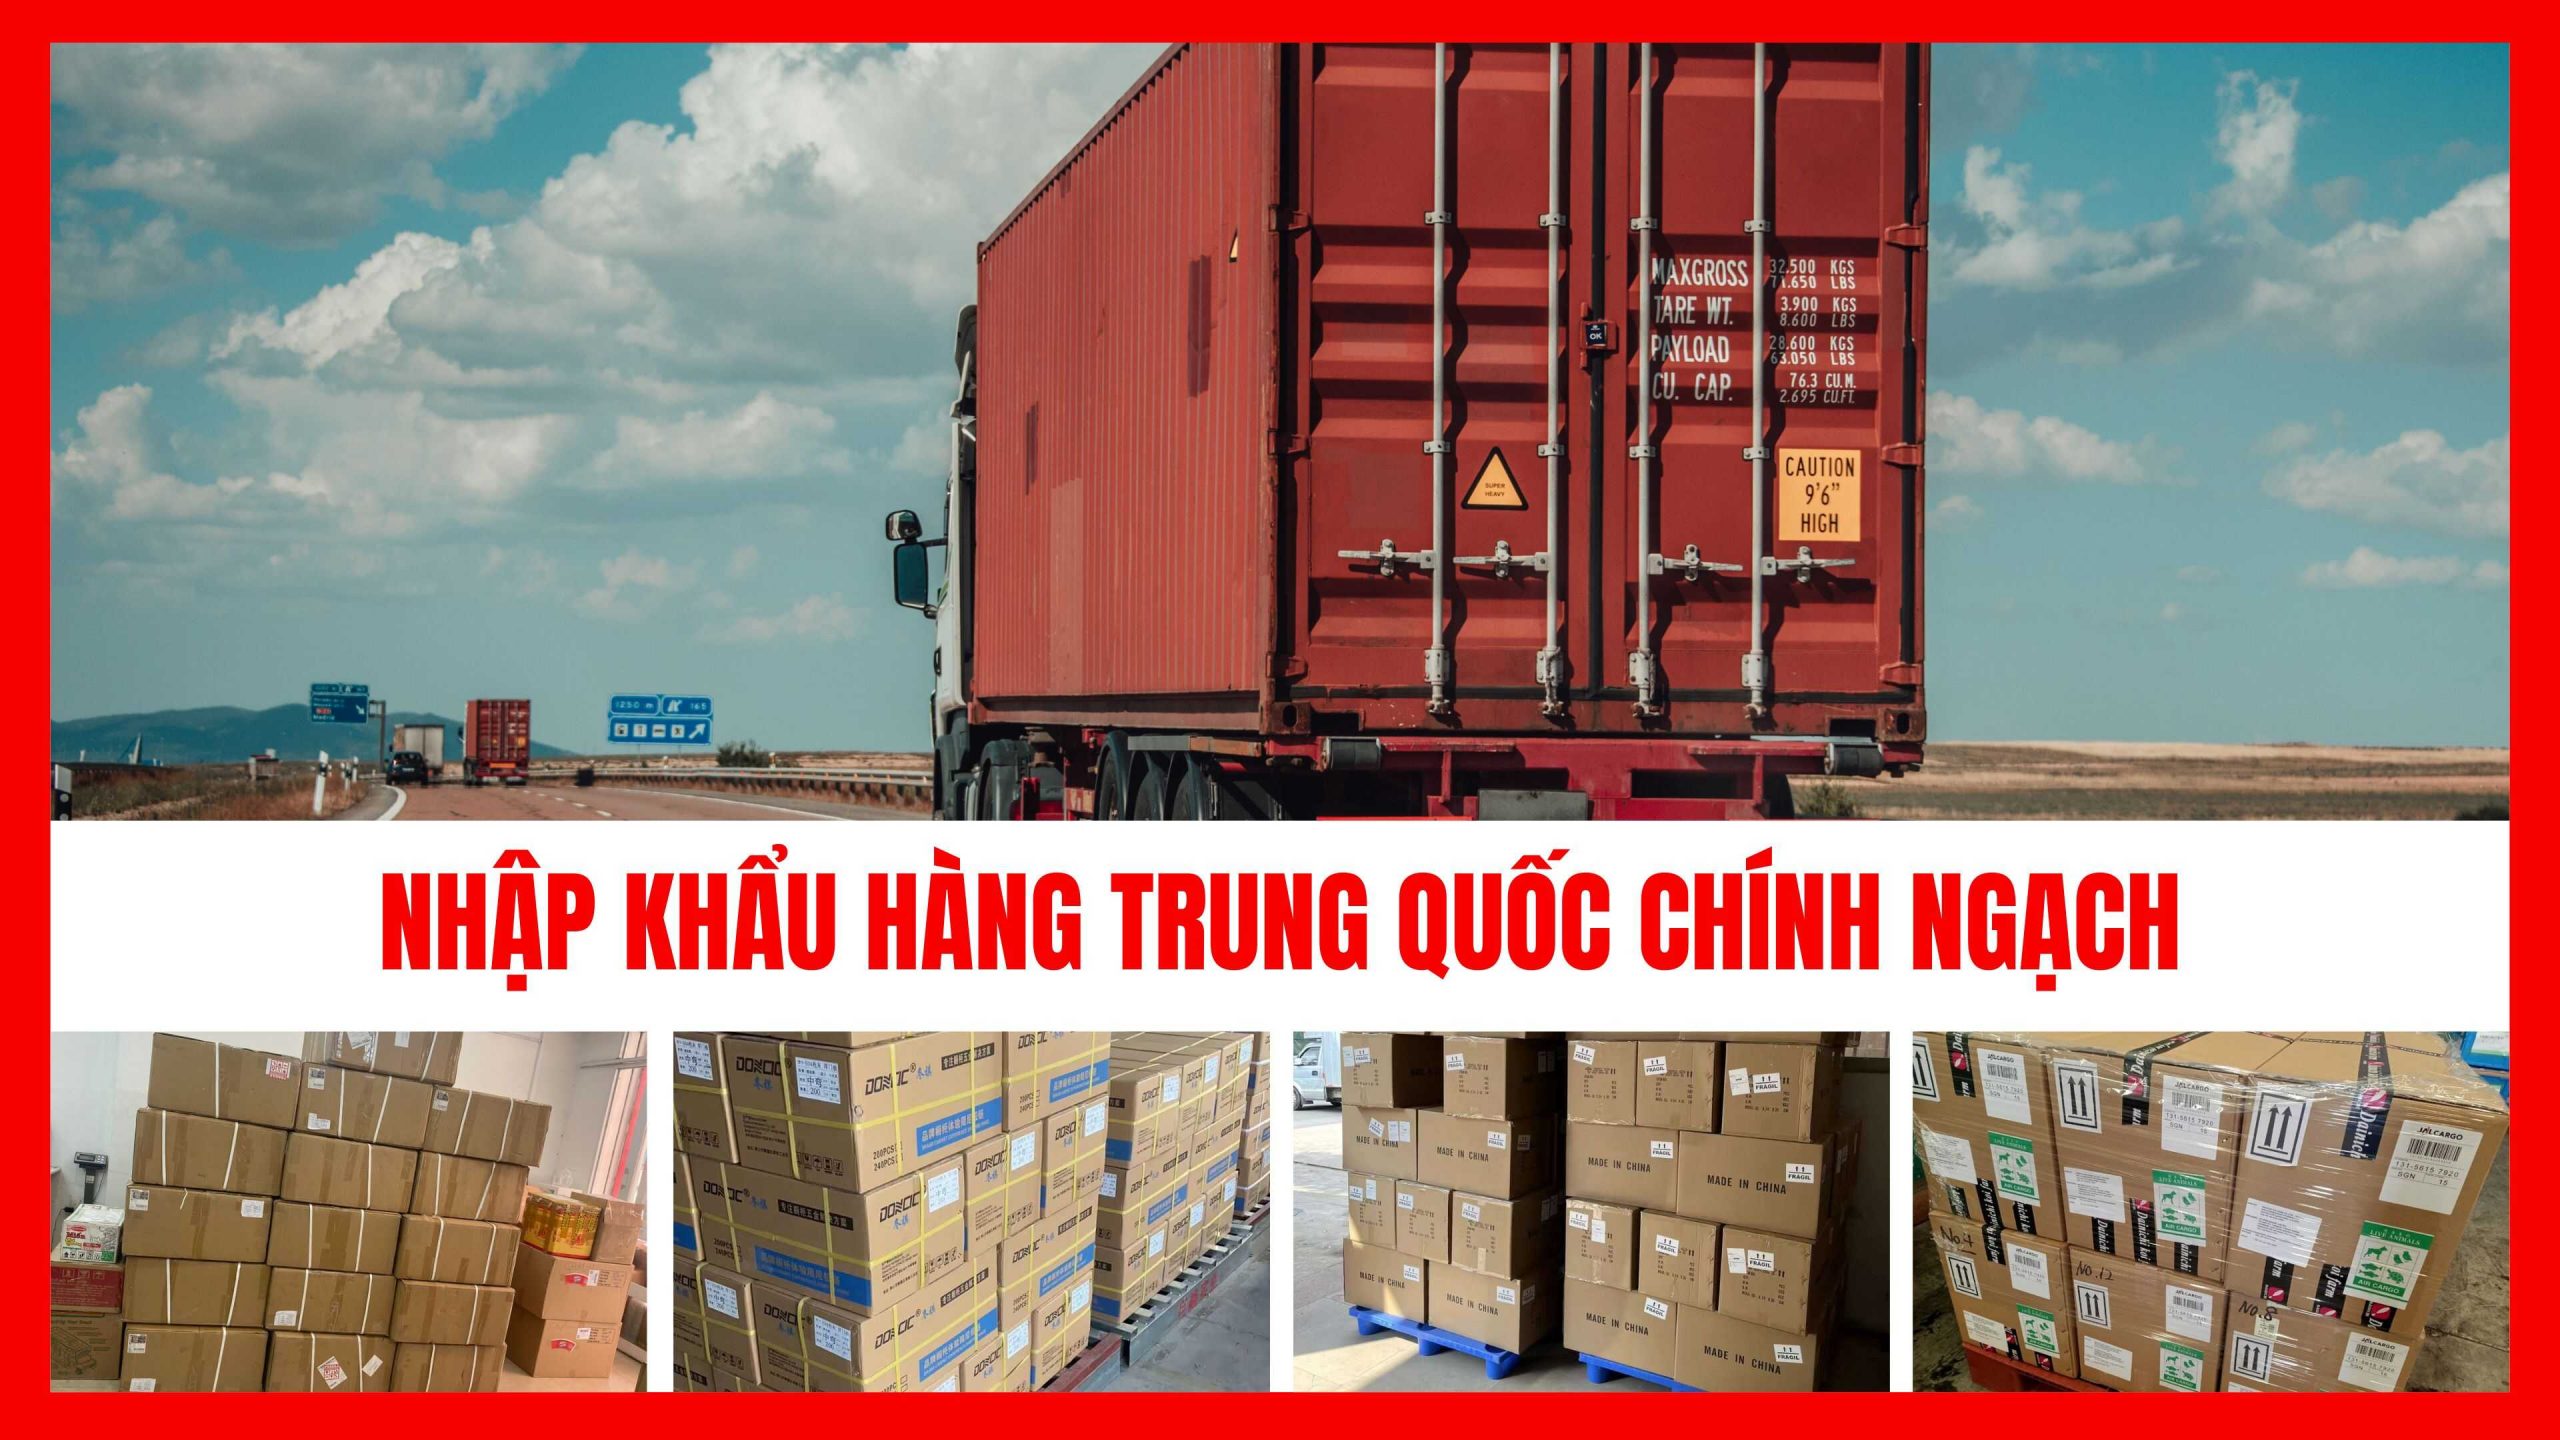 Nhập khẩu hàng Trung Quốc chính ngạch uy tín chuyên nghiệp